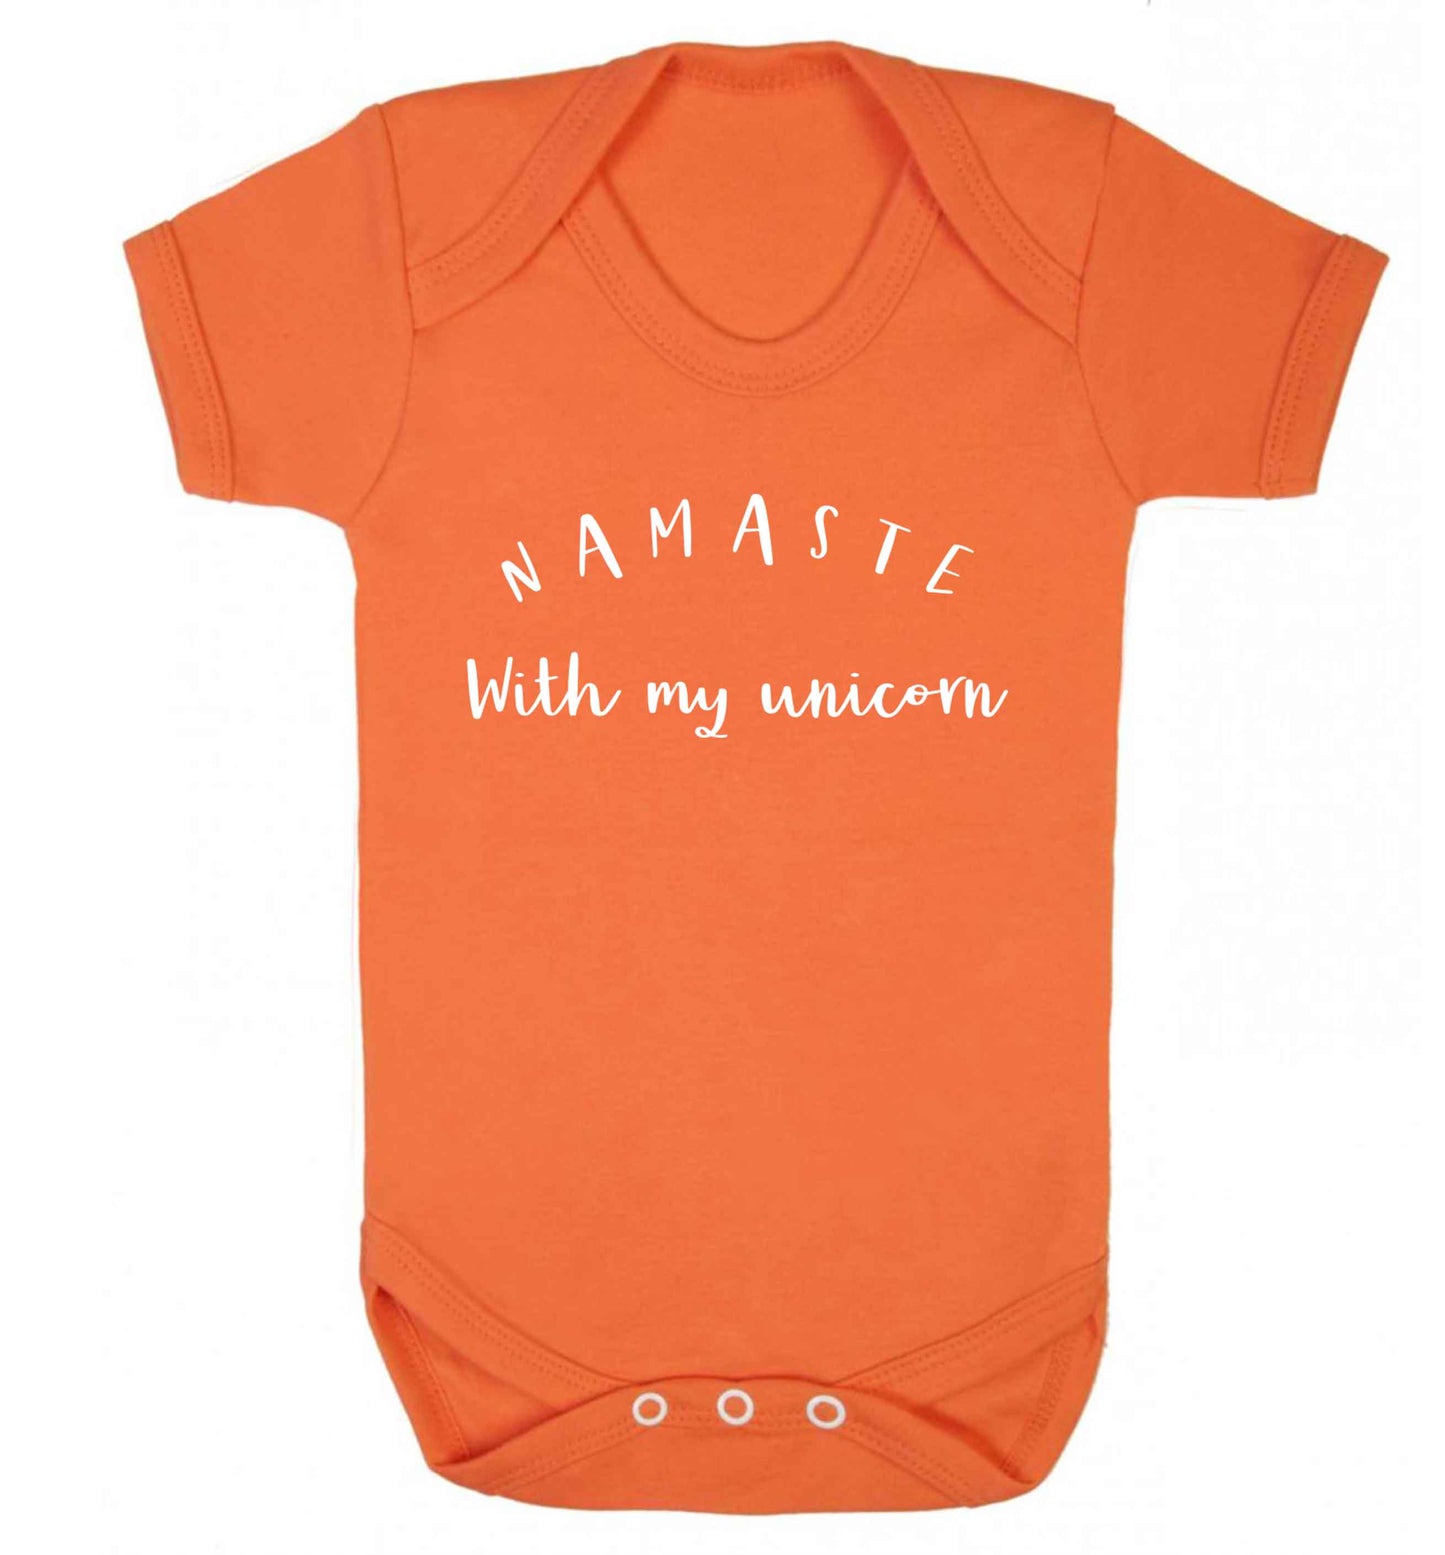 Namaste with my unicorn Baby Vest orange 18-24 months